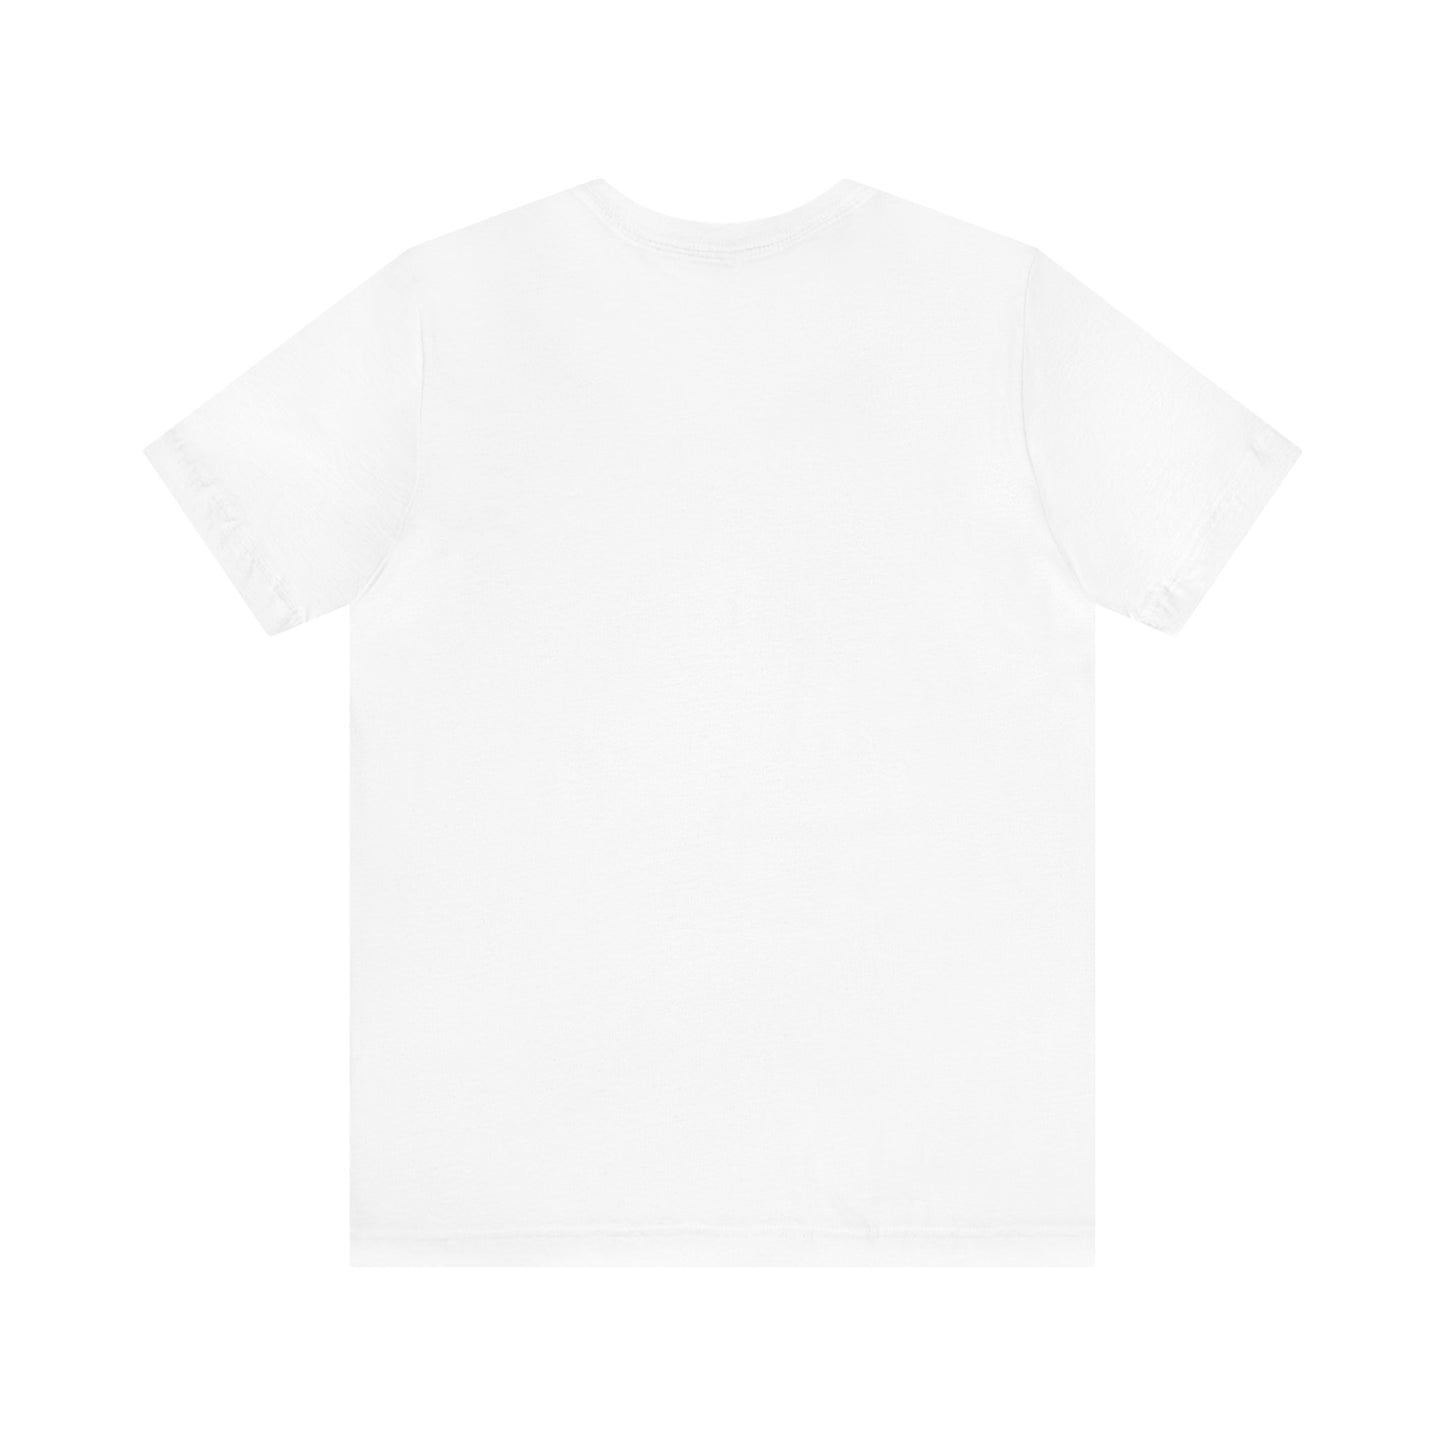 The Gardener Short Sleeve Unisex T-Shirt